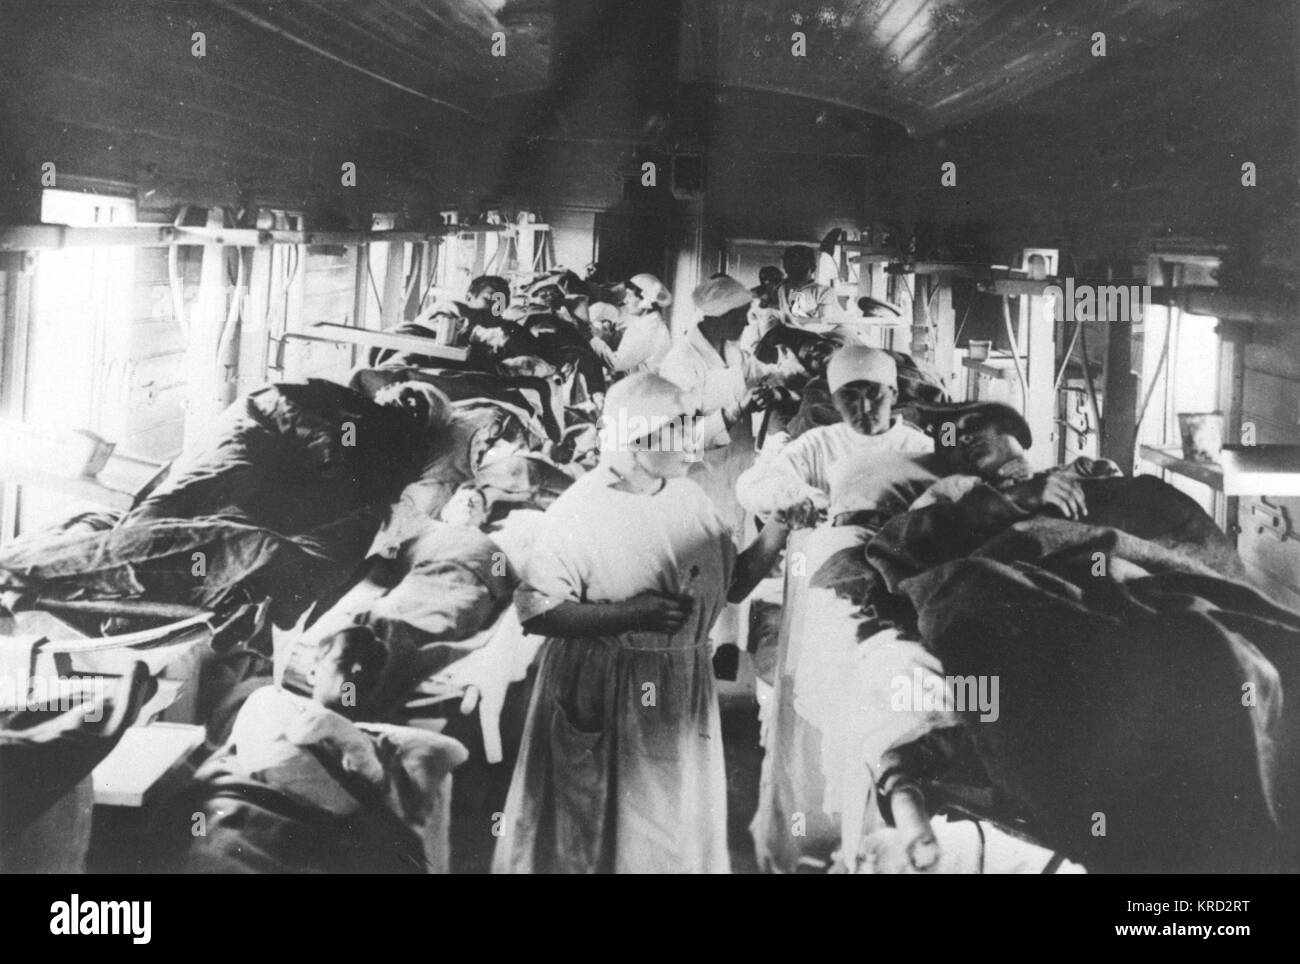 Eine Russische Bahn als provisorisches Krankenhaus spezialisiert in der Behandlung von Patienten mit Typhus verwendet. Datum: 1920 Stockfoto